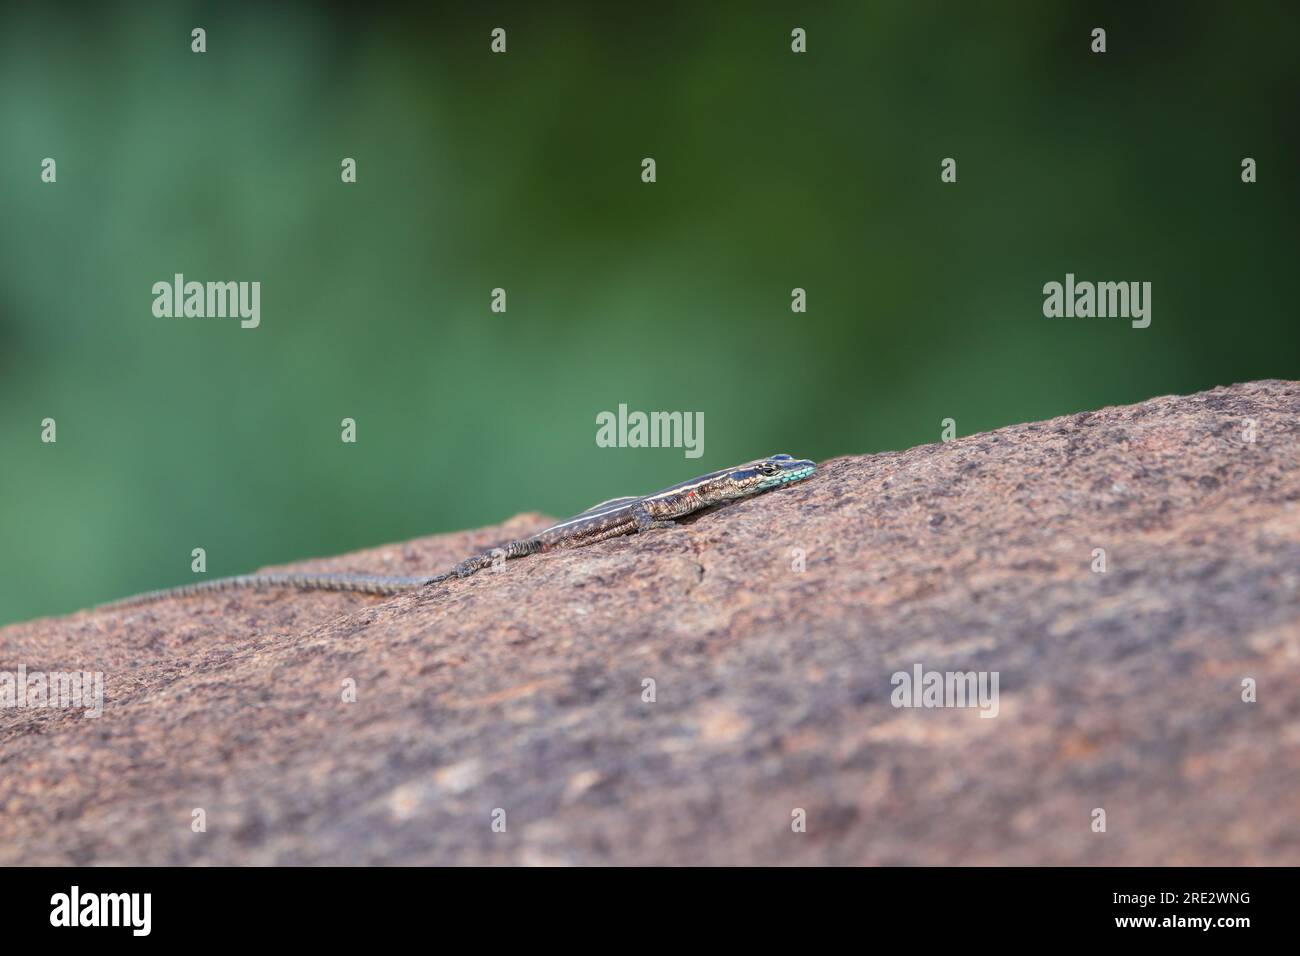 Common Flat Lizard Basking On Granite Rock (Platysaurus intermedius) Stock Photo